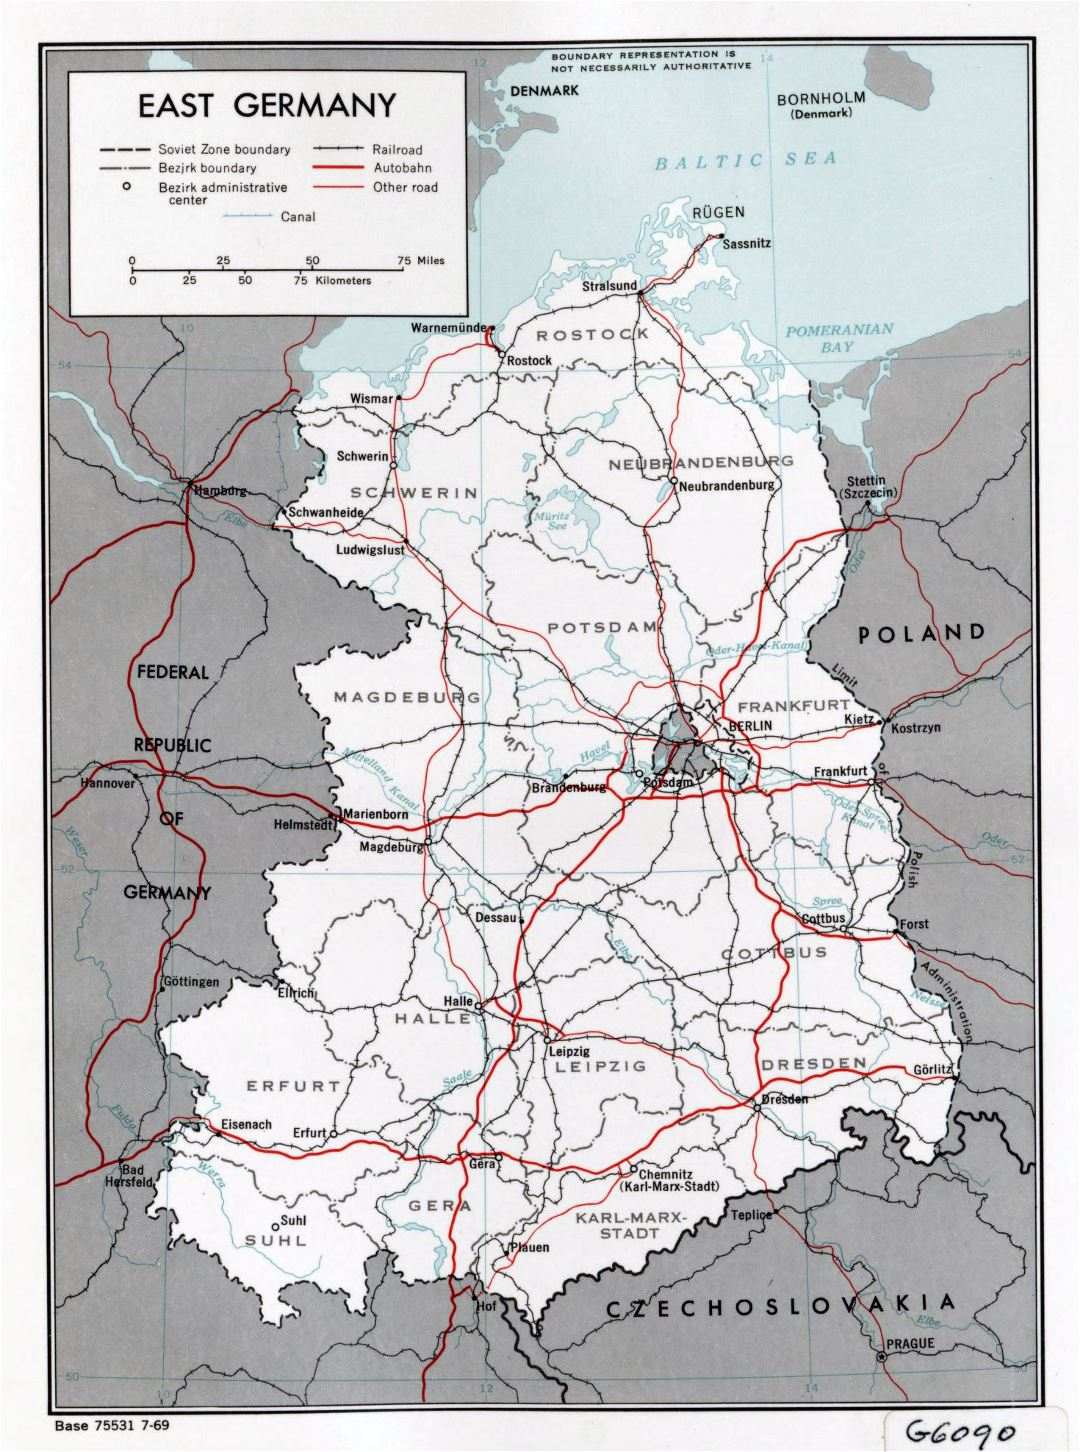 Mapa político y administrativo grande de Alemania del Este con carreteras, ferrocarriles y las principales ciudades - 1969